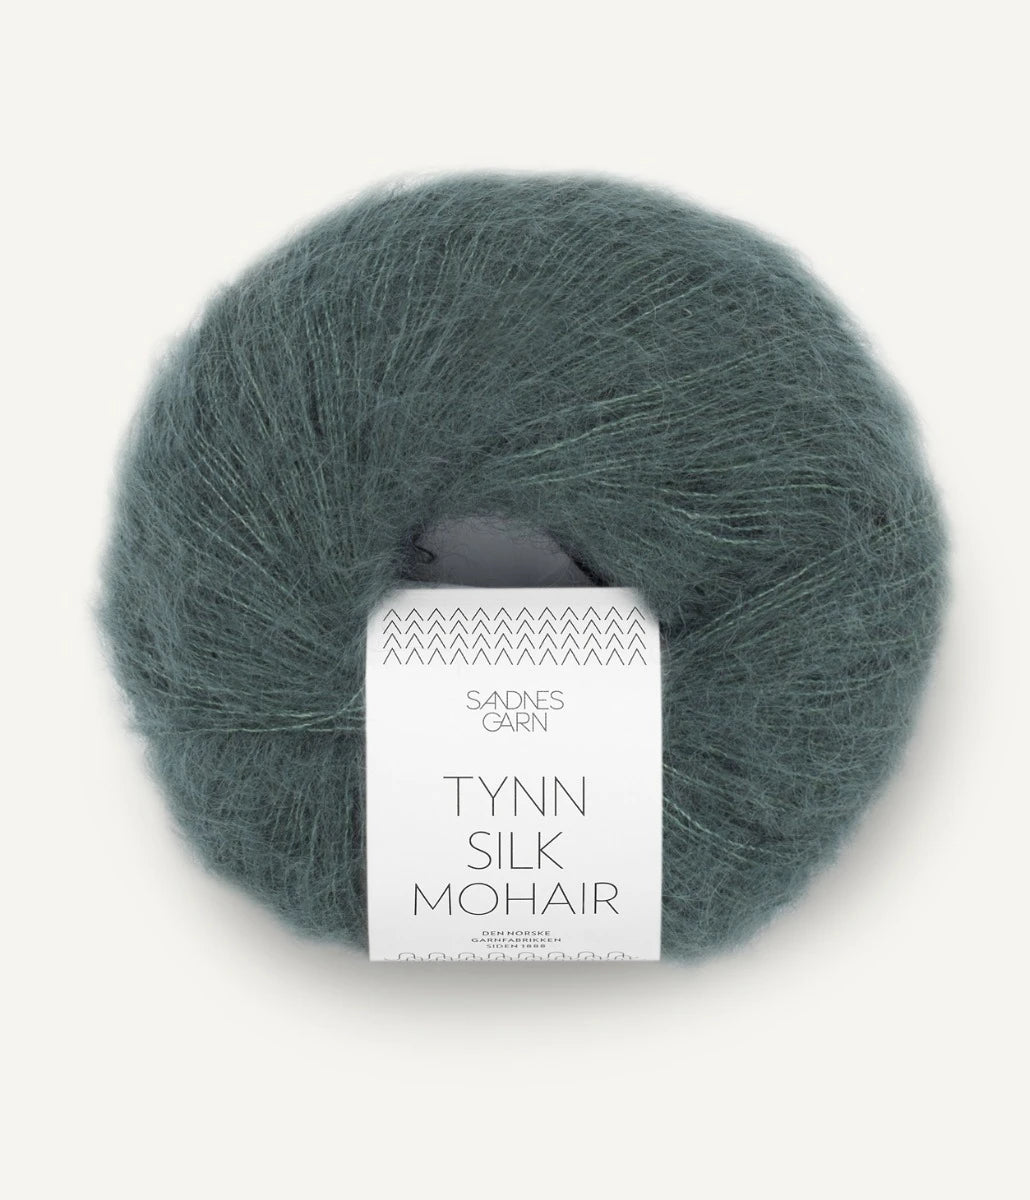 Kuvassa on Sandnes Garn Tynn Silk Mohair -lanka (yarn) värissä Urban Chic.